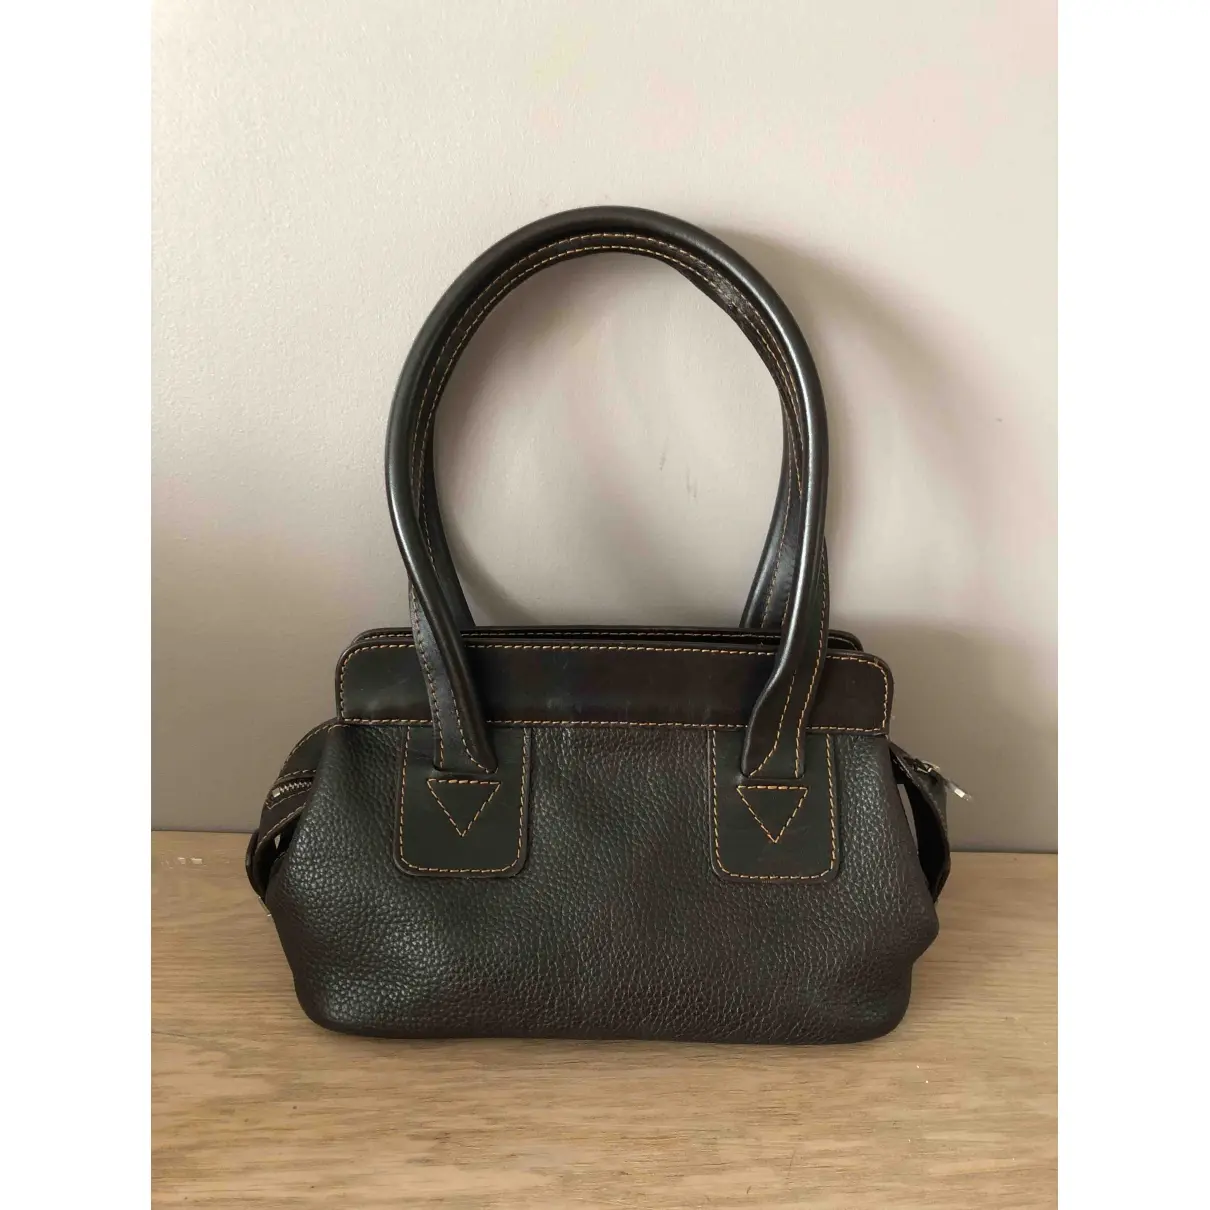 Lancel Leather handbag for sale